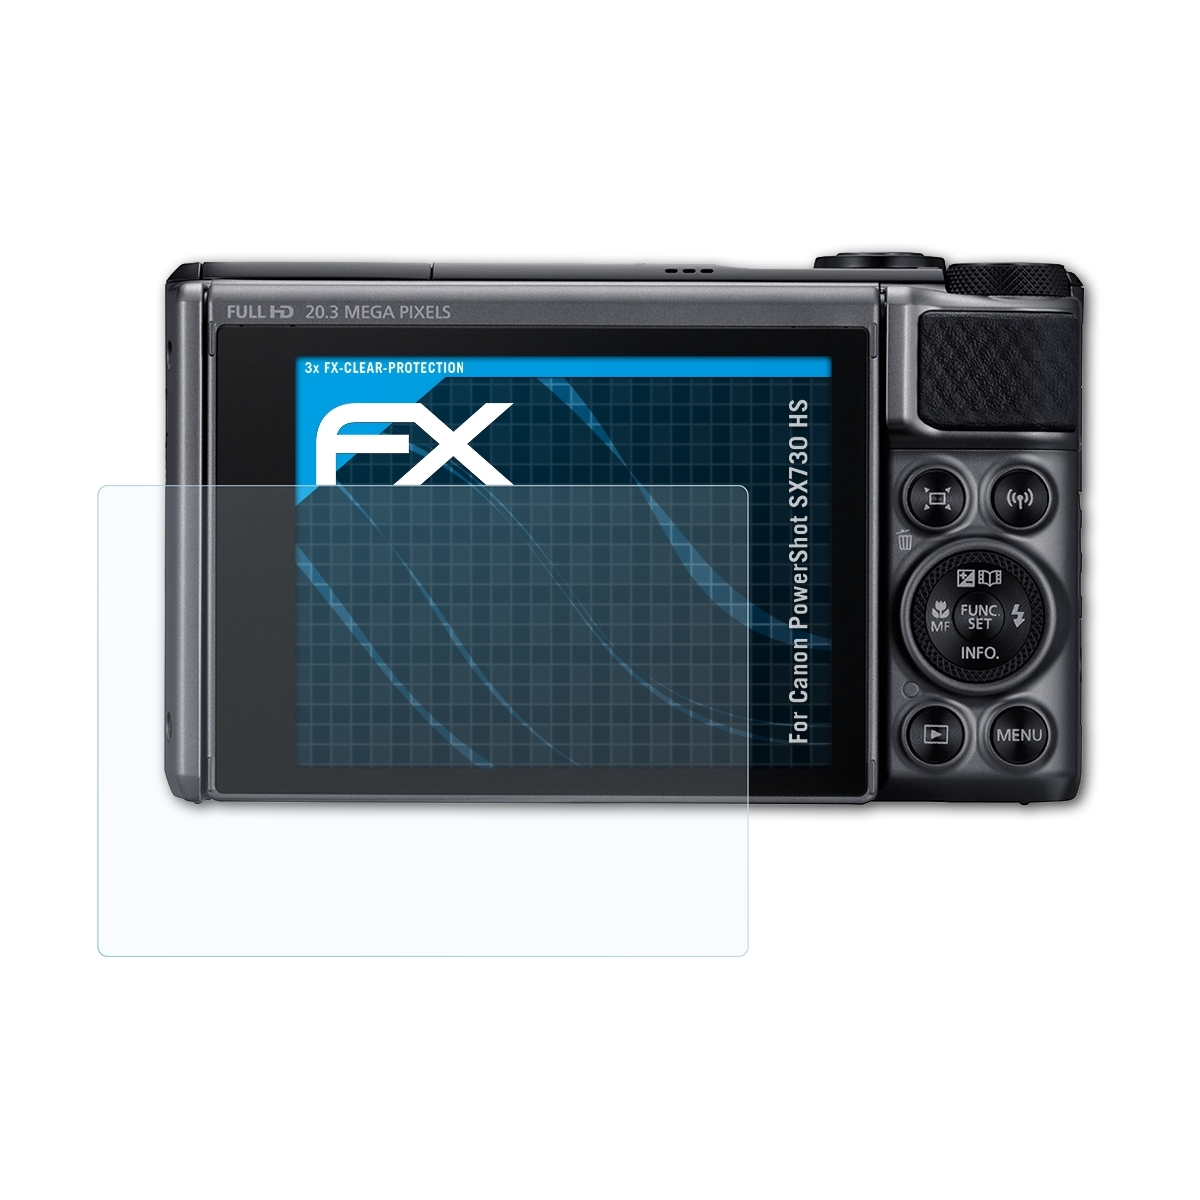 ATFOLIX 3x FX-Clear Displayschutz(für HS) SX730 Canon PowerShot